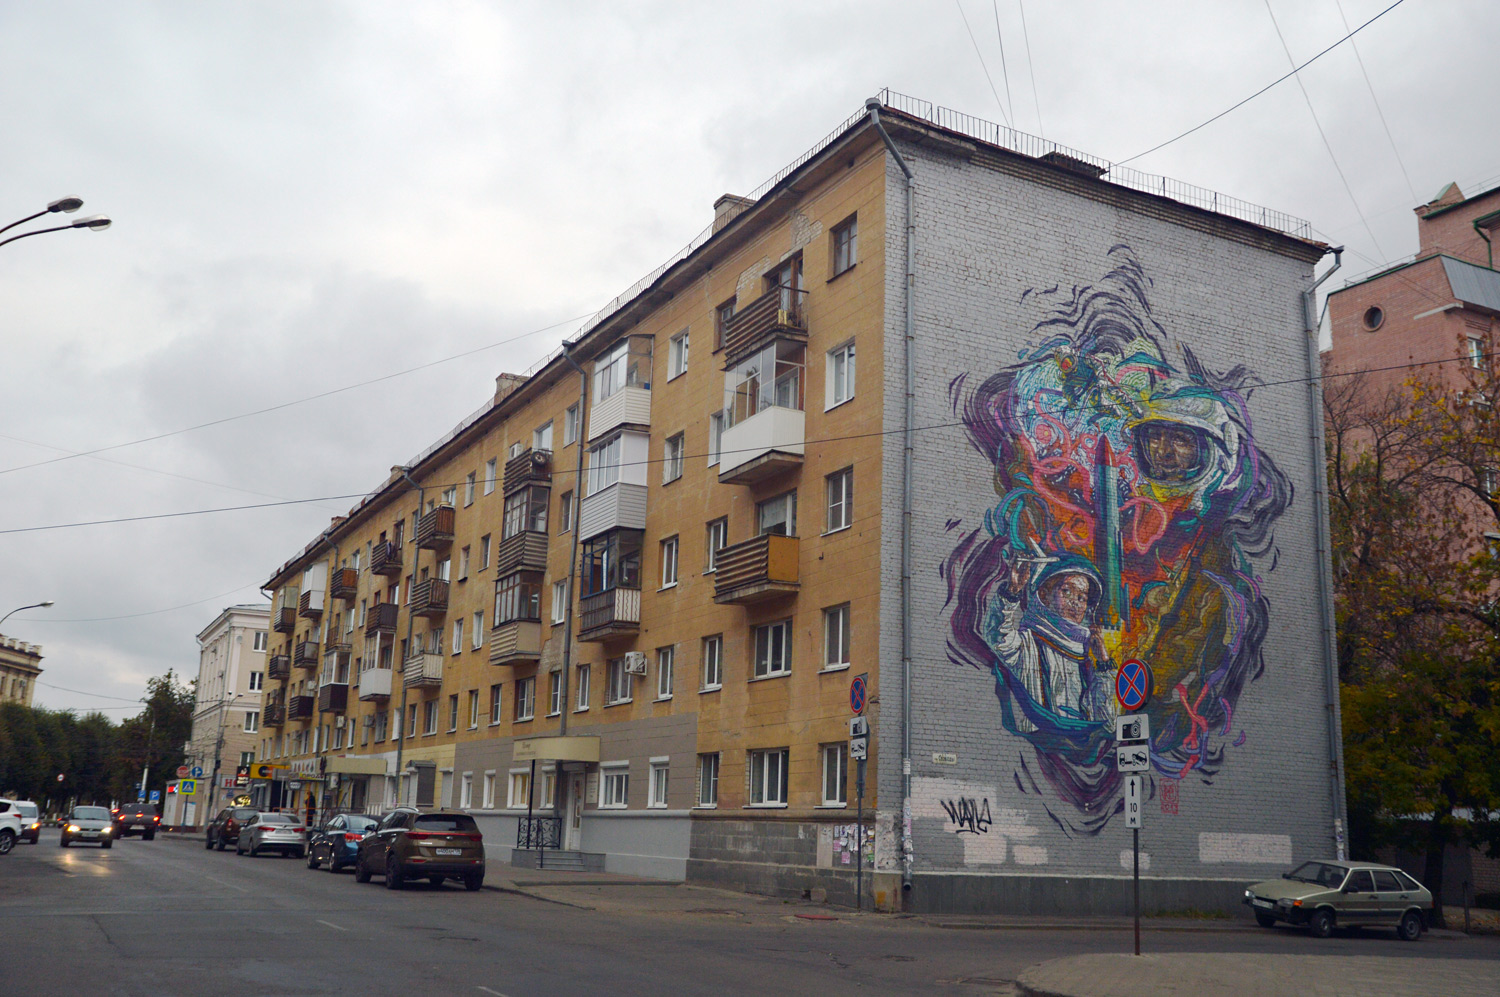 Woroneż, Улица Станкевича, 1. Монументальное искусство (мозаики, росписи)